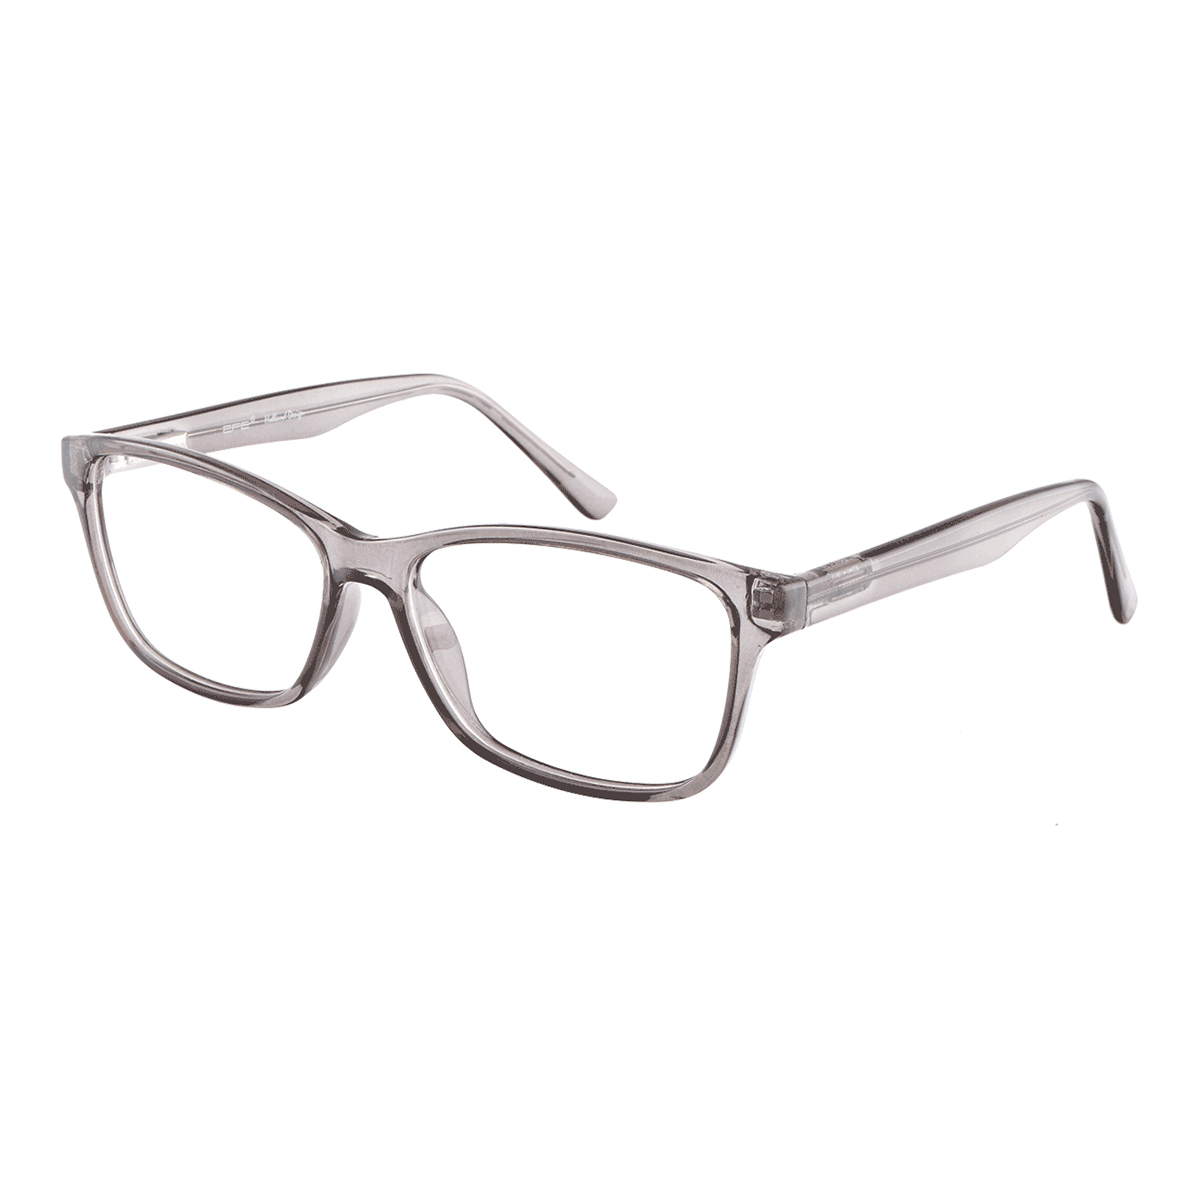 Cheek - Square Gray Reading Glasses for Men & Women